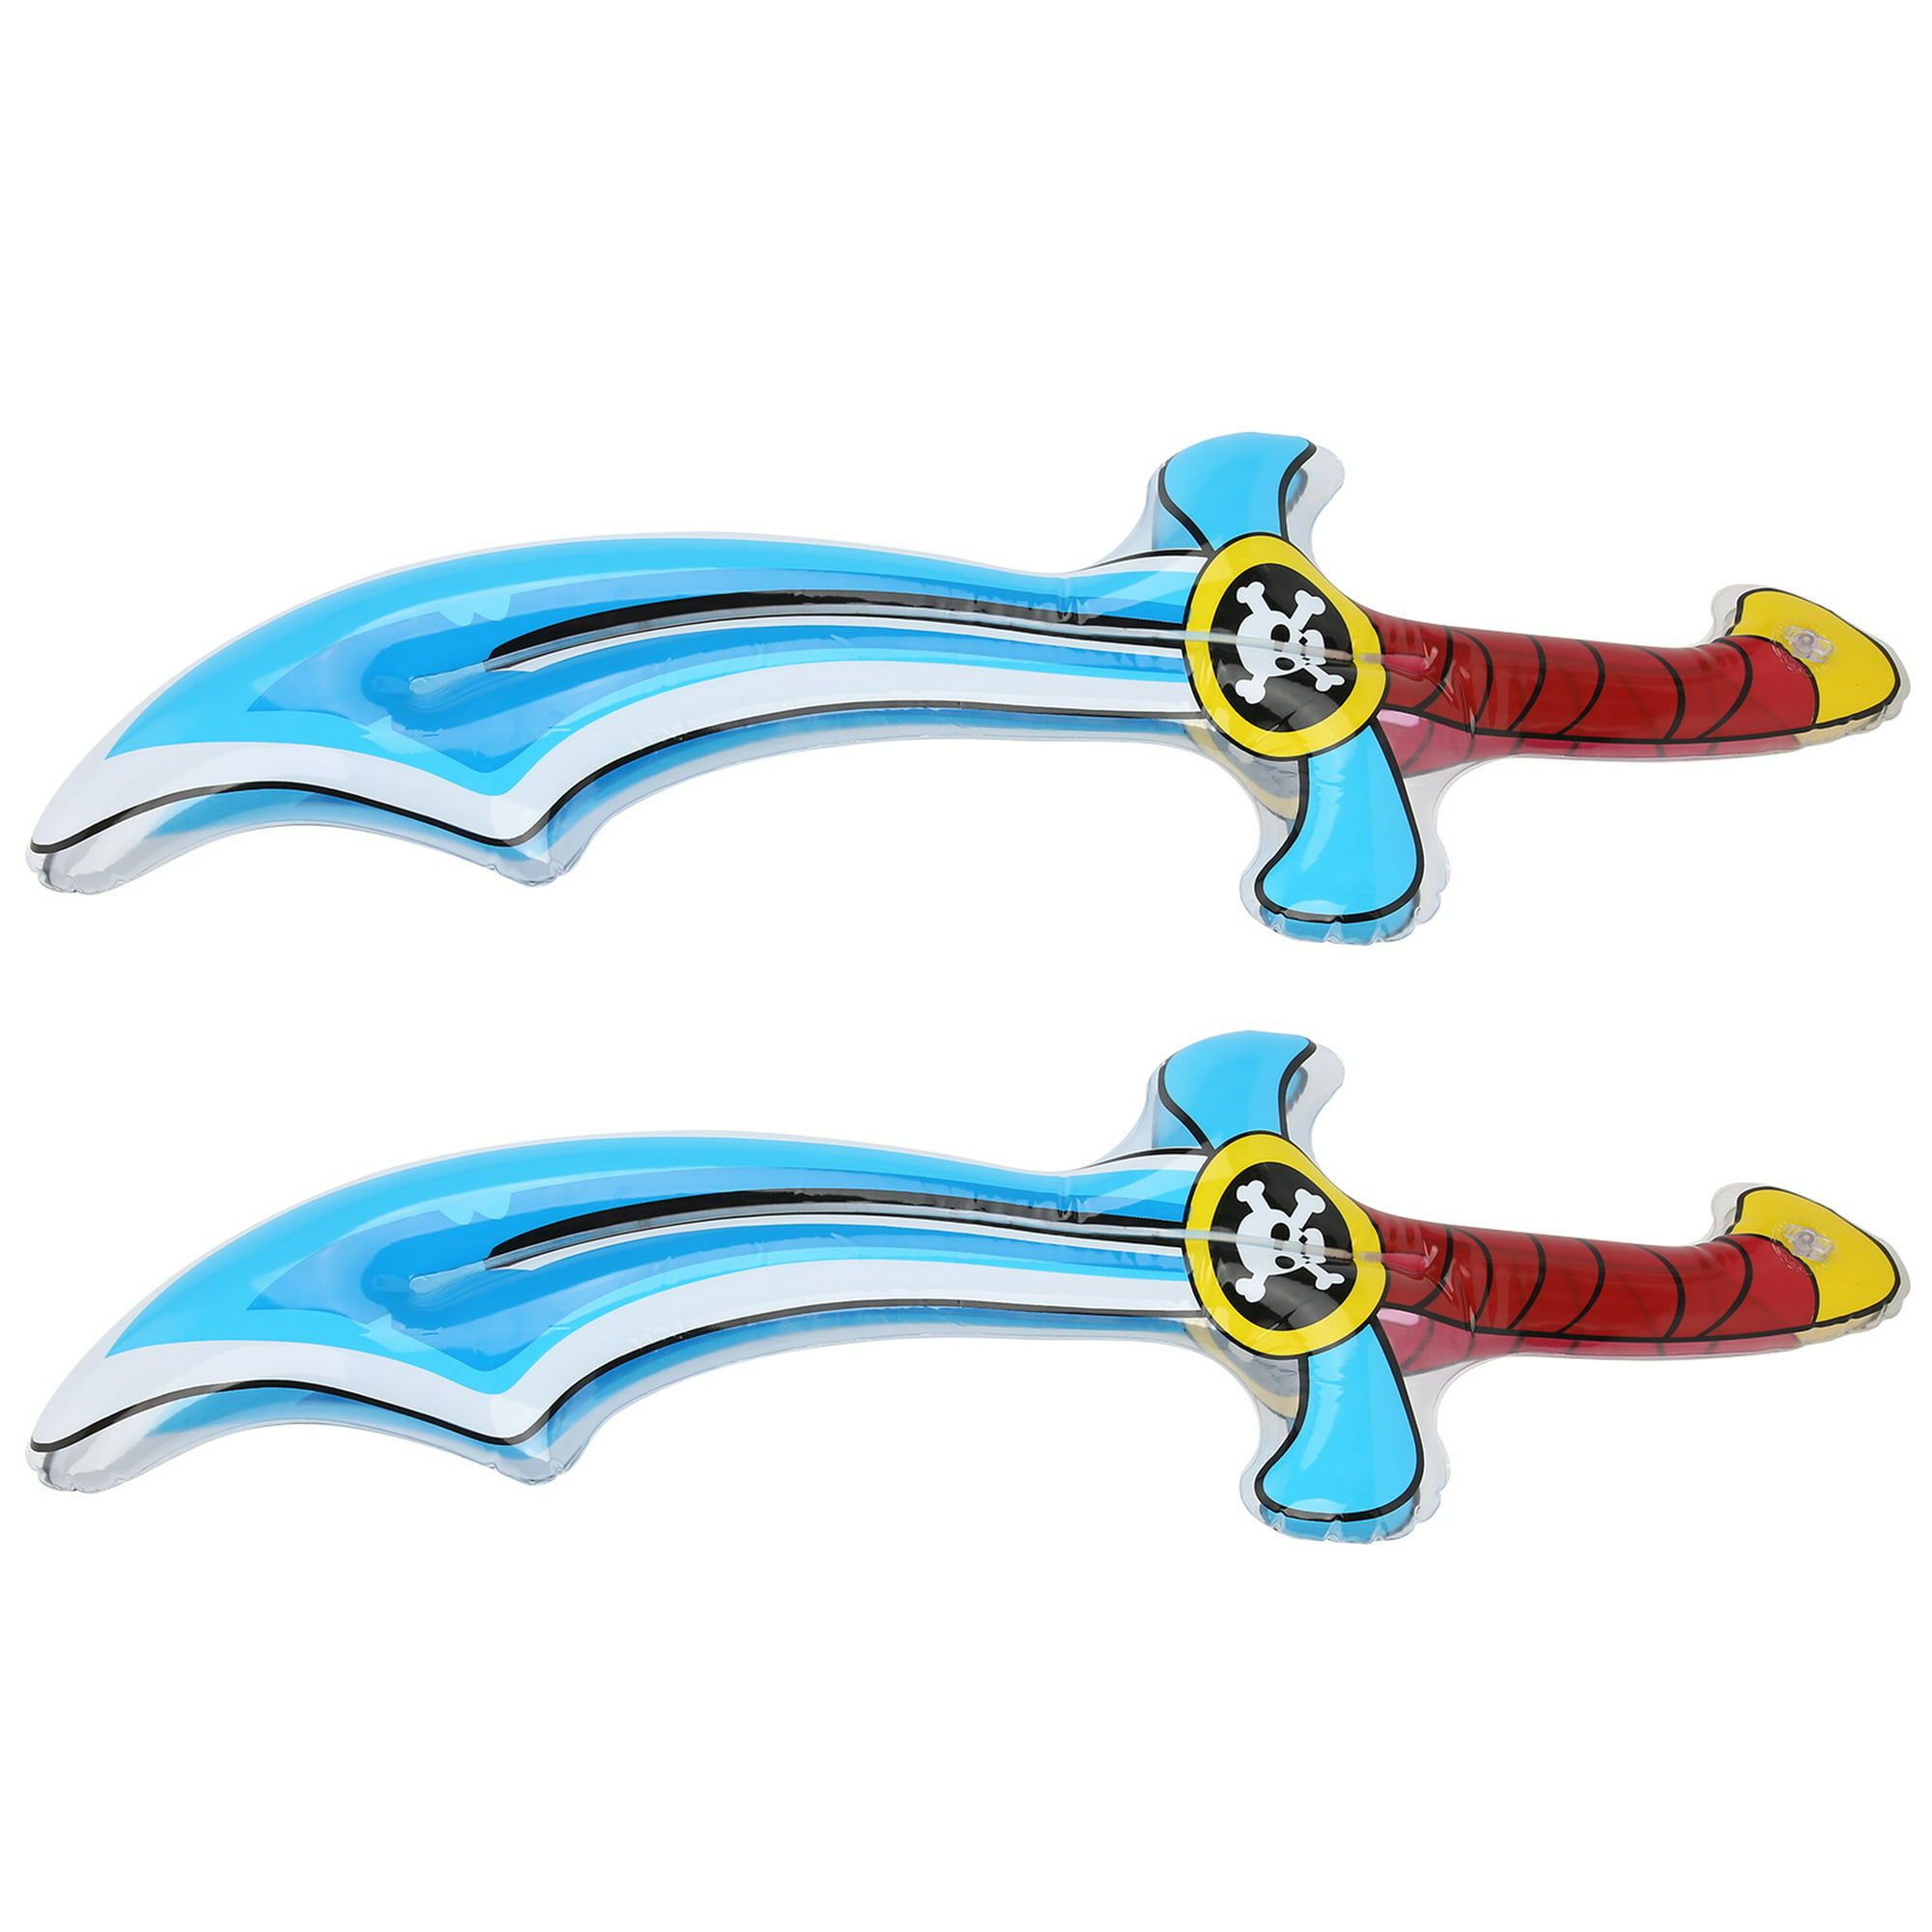 Katana de juguete, 2 piezas de juguete de espada falsa para playa para nios  para parquesToys Fyydes Descripción de la referencia